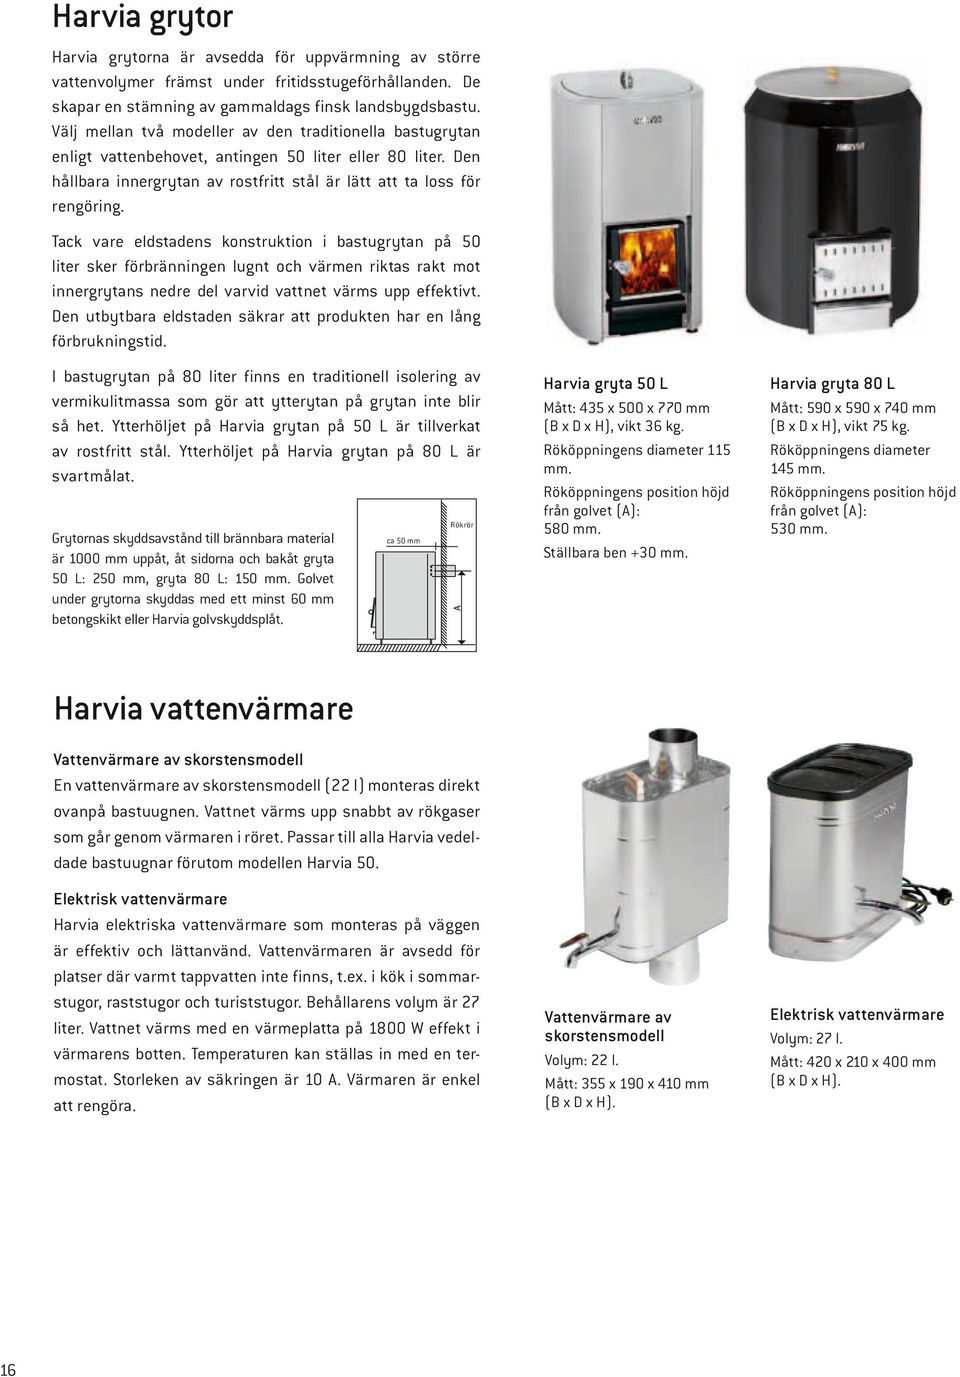 Harvia vedeldade produkter Vedeldade bastuugnar Bastuugnens extra  utrustning - PDF Gratis nedladdning